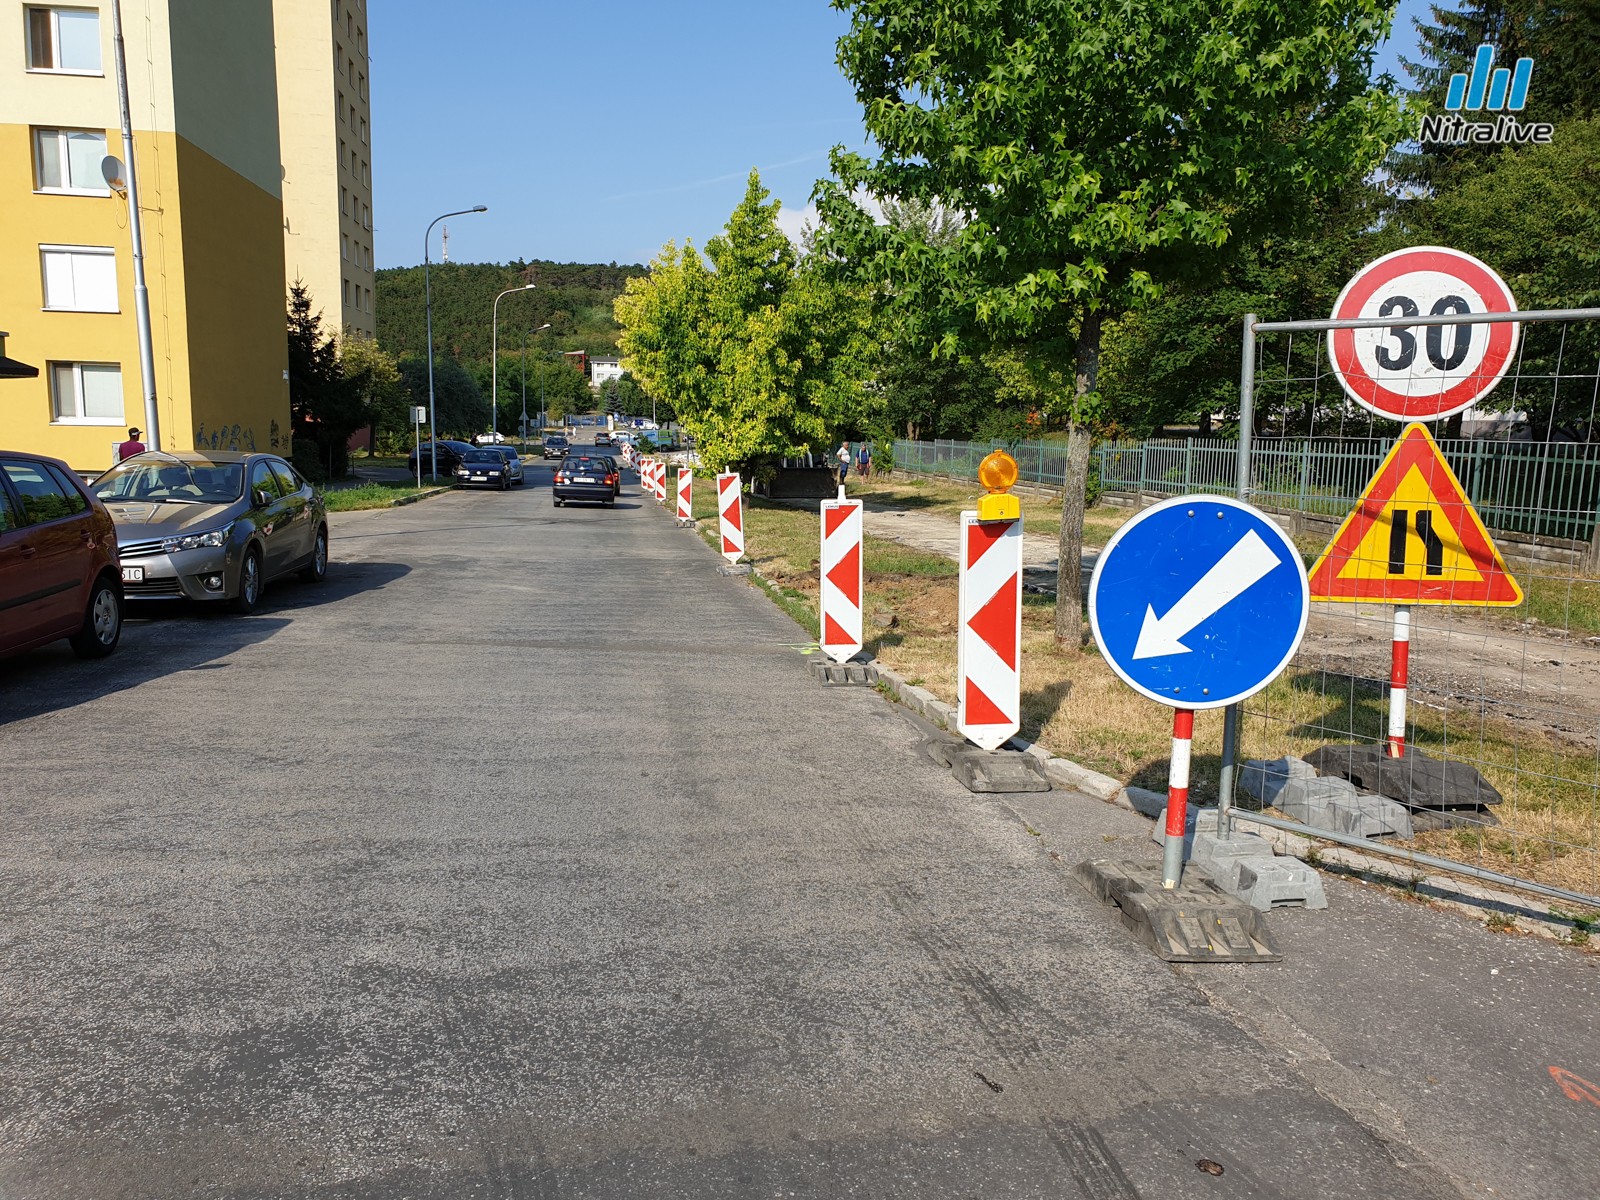 Na Škultétyho ulici pribudnú parkovacie miesta a odbočovací pruh, uzávierka ulice koncom augusta